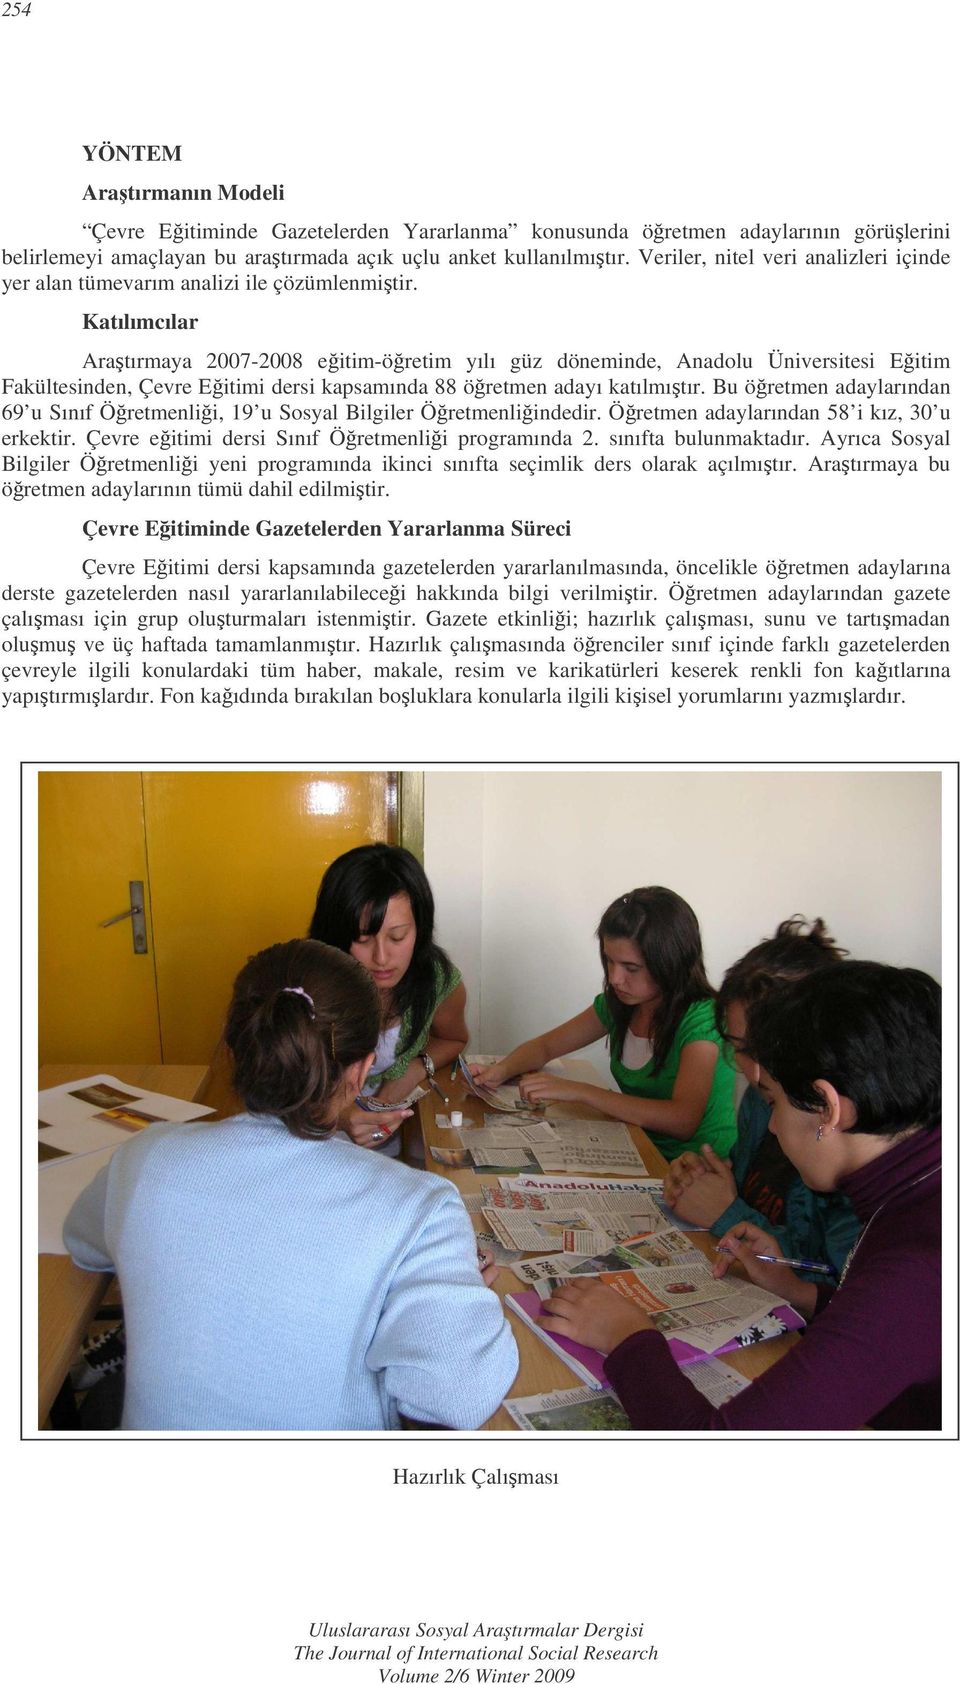 Katılımcılar Aratırmaya 2007-2008 eitim-öretim yılı güz döneminde, Anadolu Üniversitesi Eitim Fakültesinden, Çevre Eitimi dersi kapsamında 88 öretmen adayı katılmıtır.